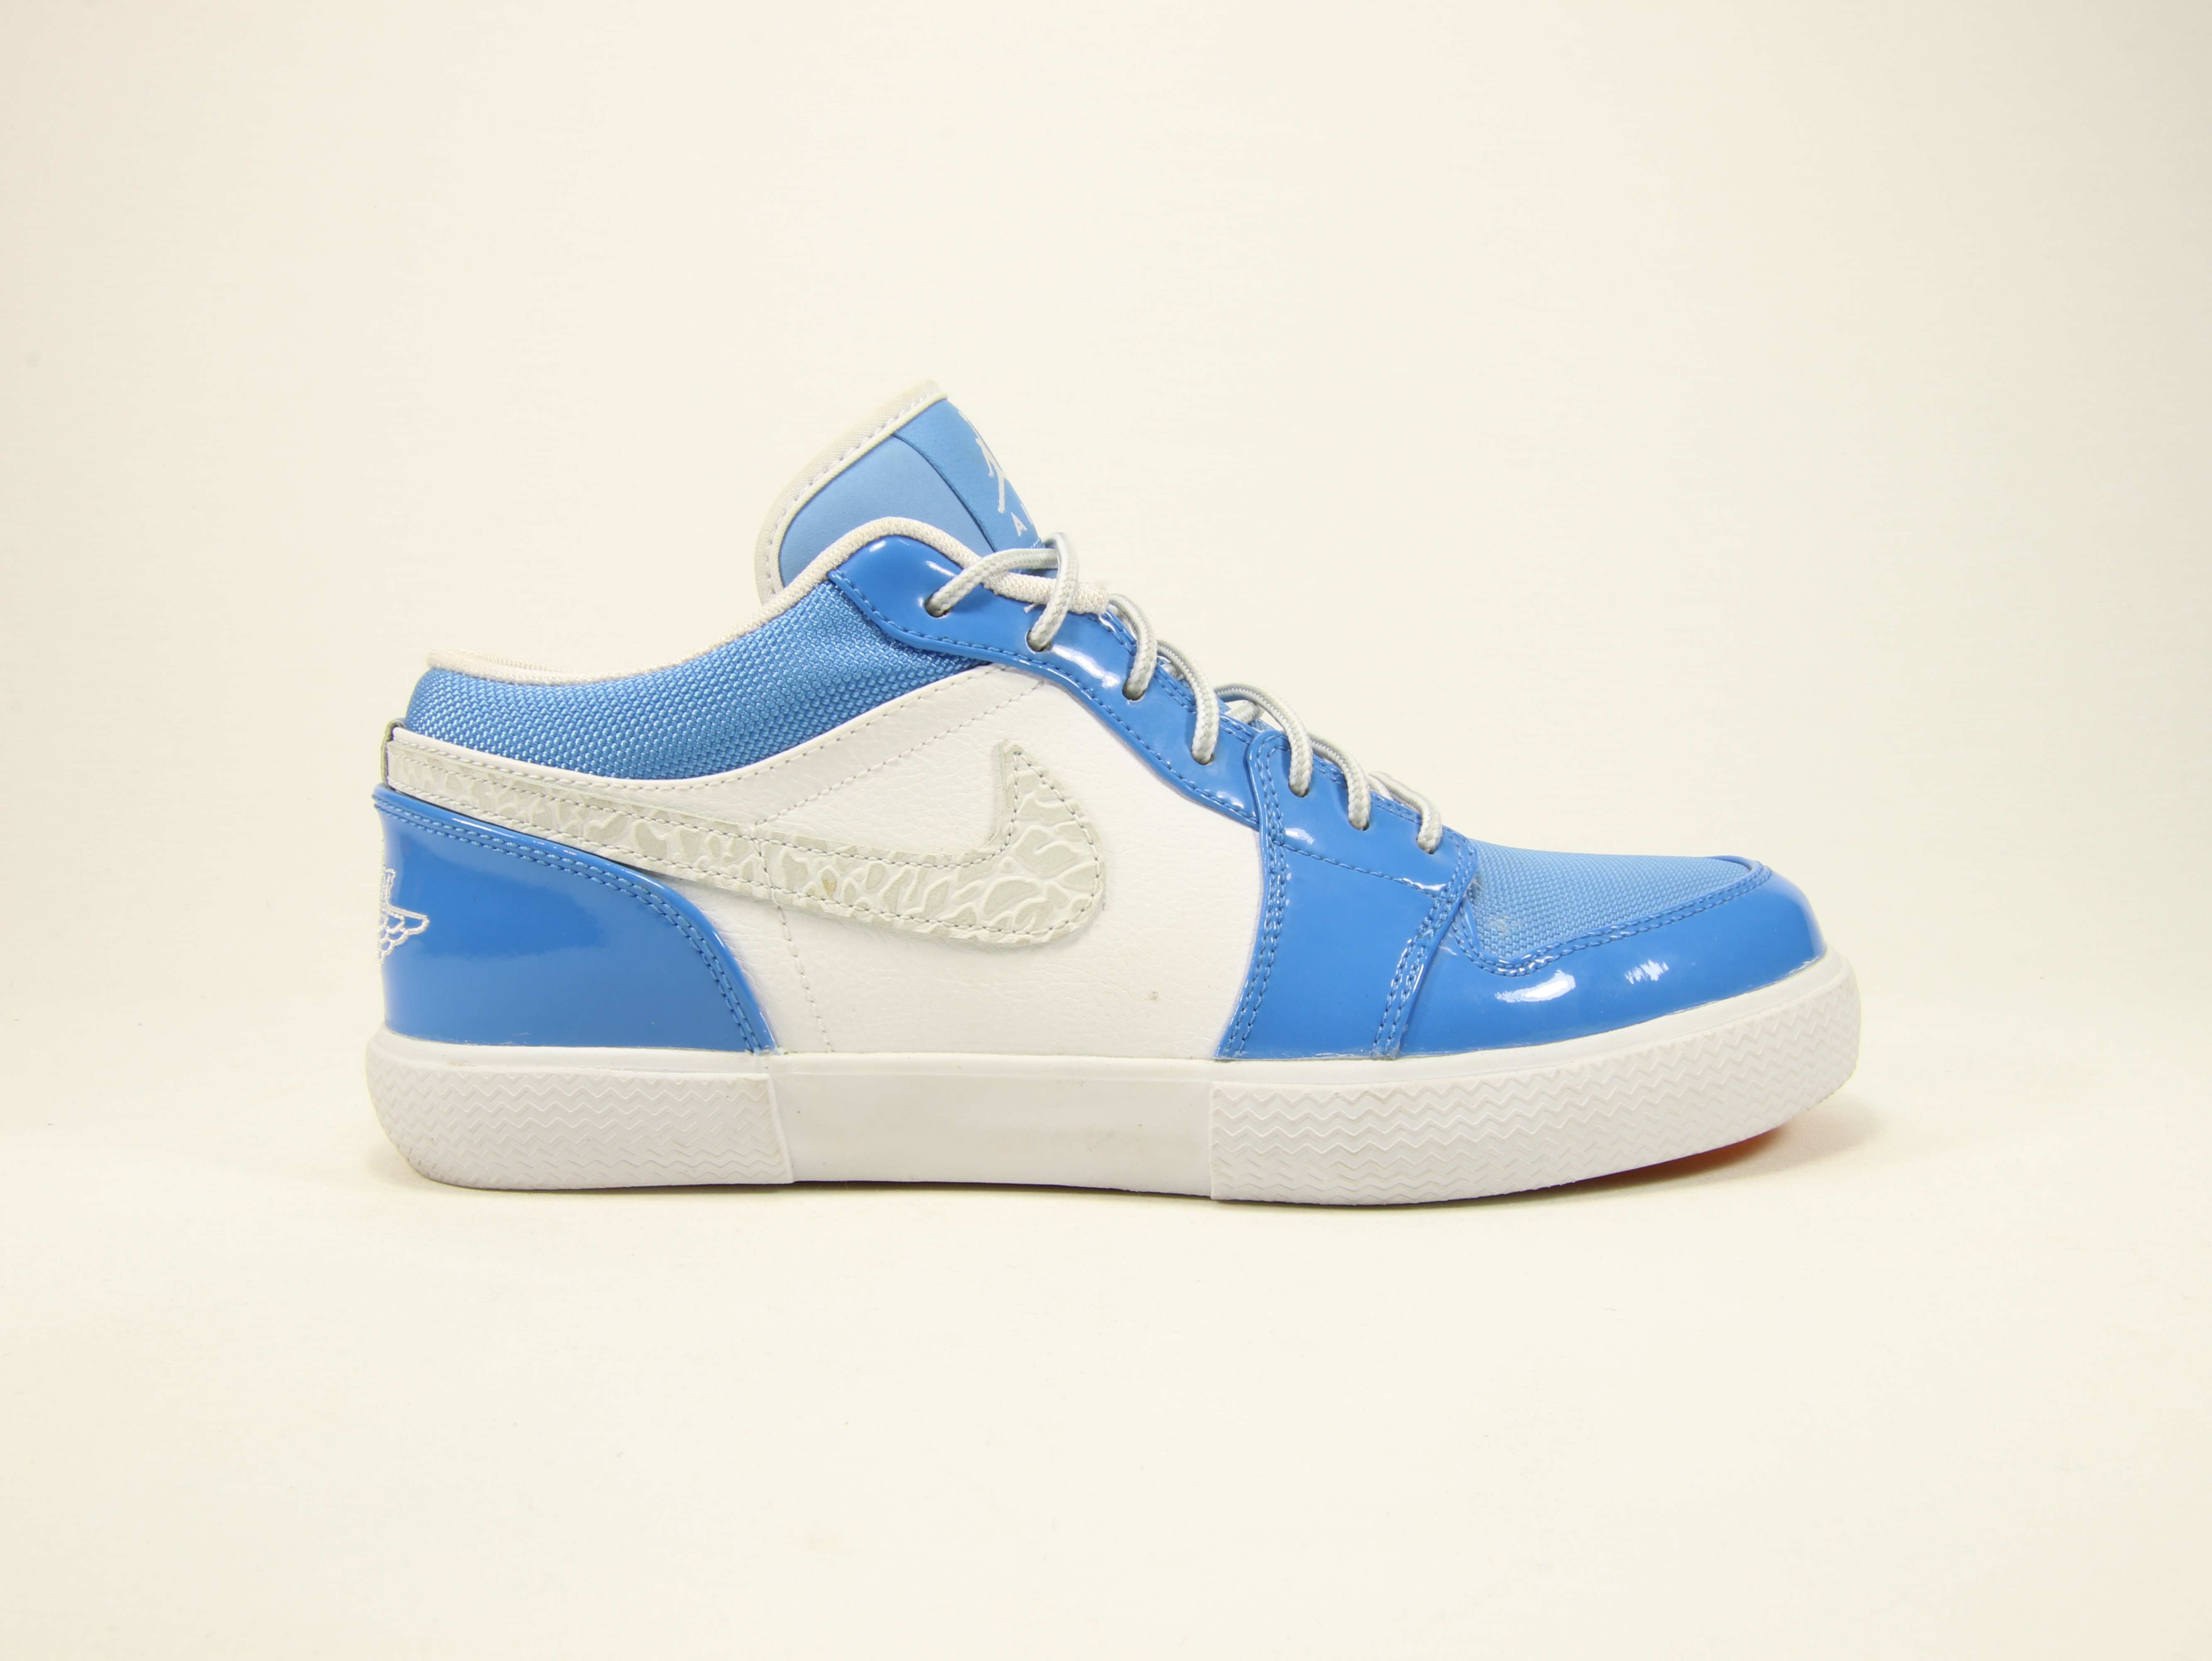 Nike Air Jordan Retro V.1 White University Blue – David Swoosh